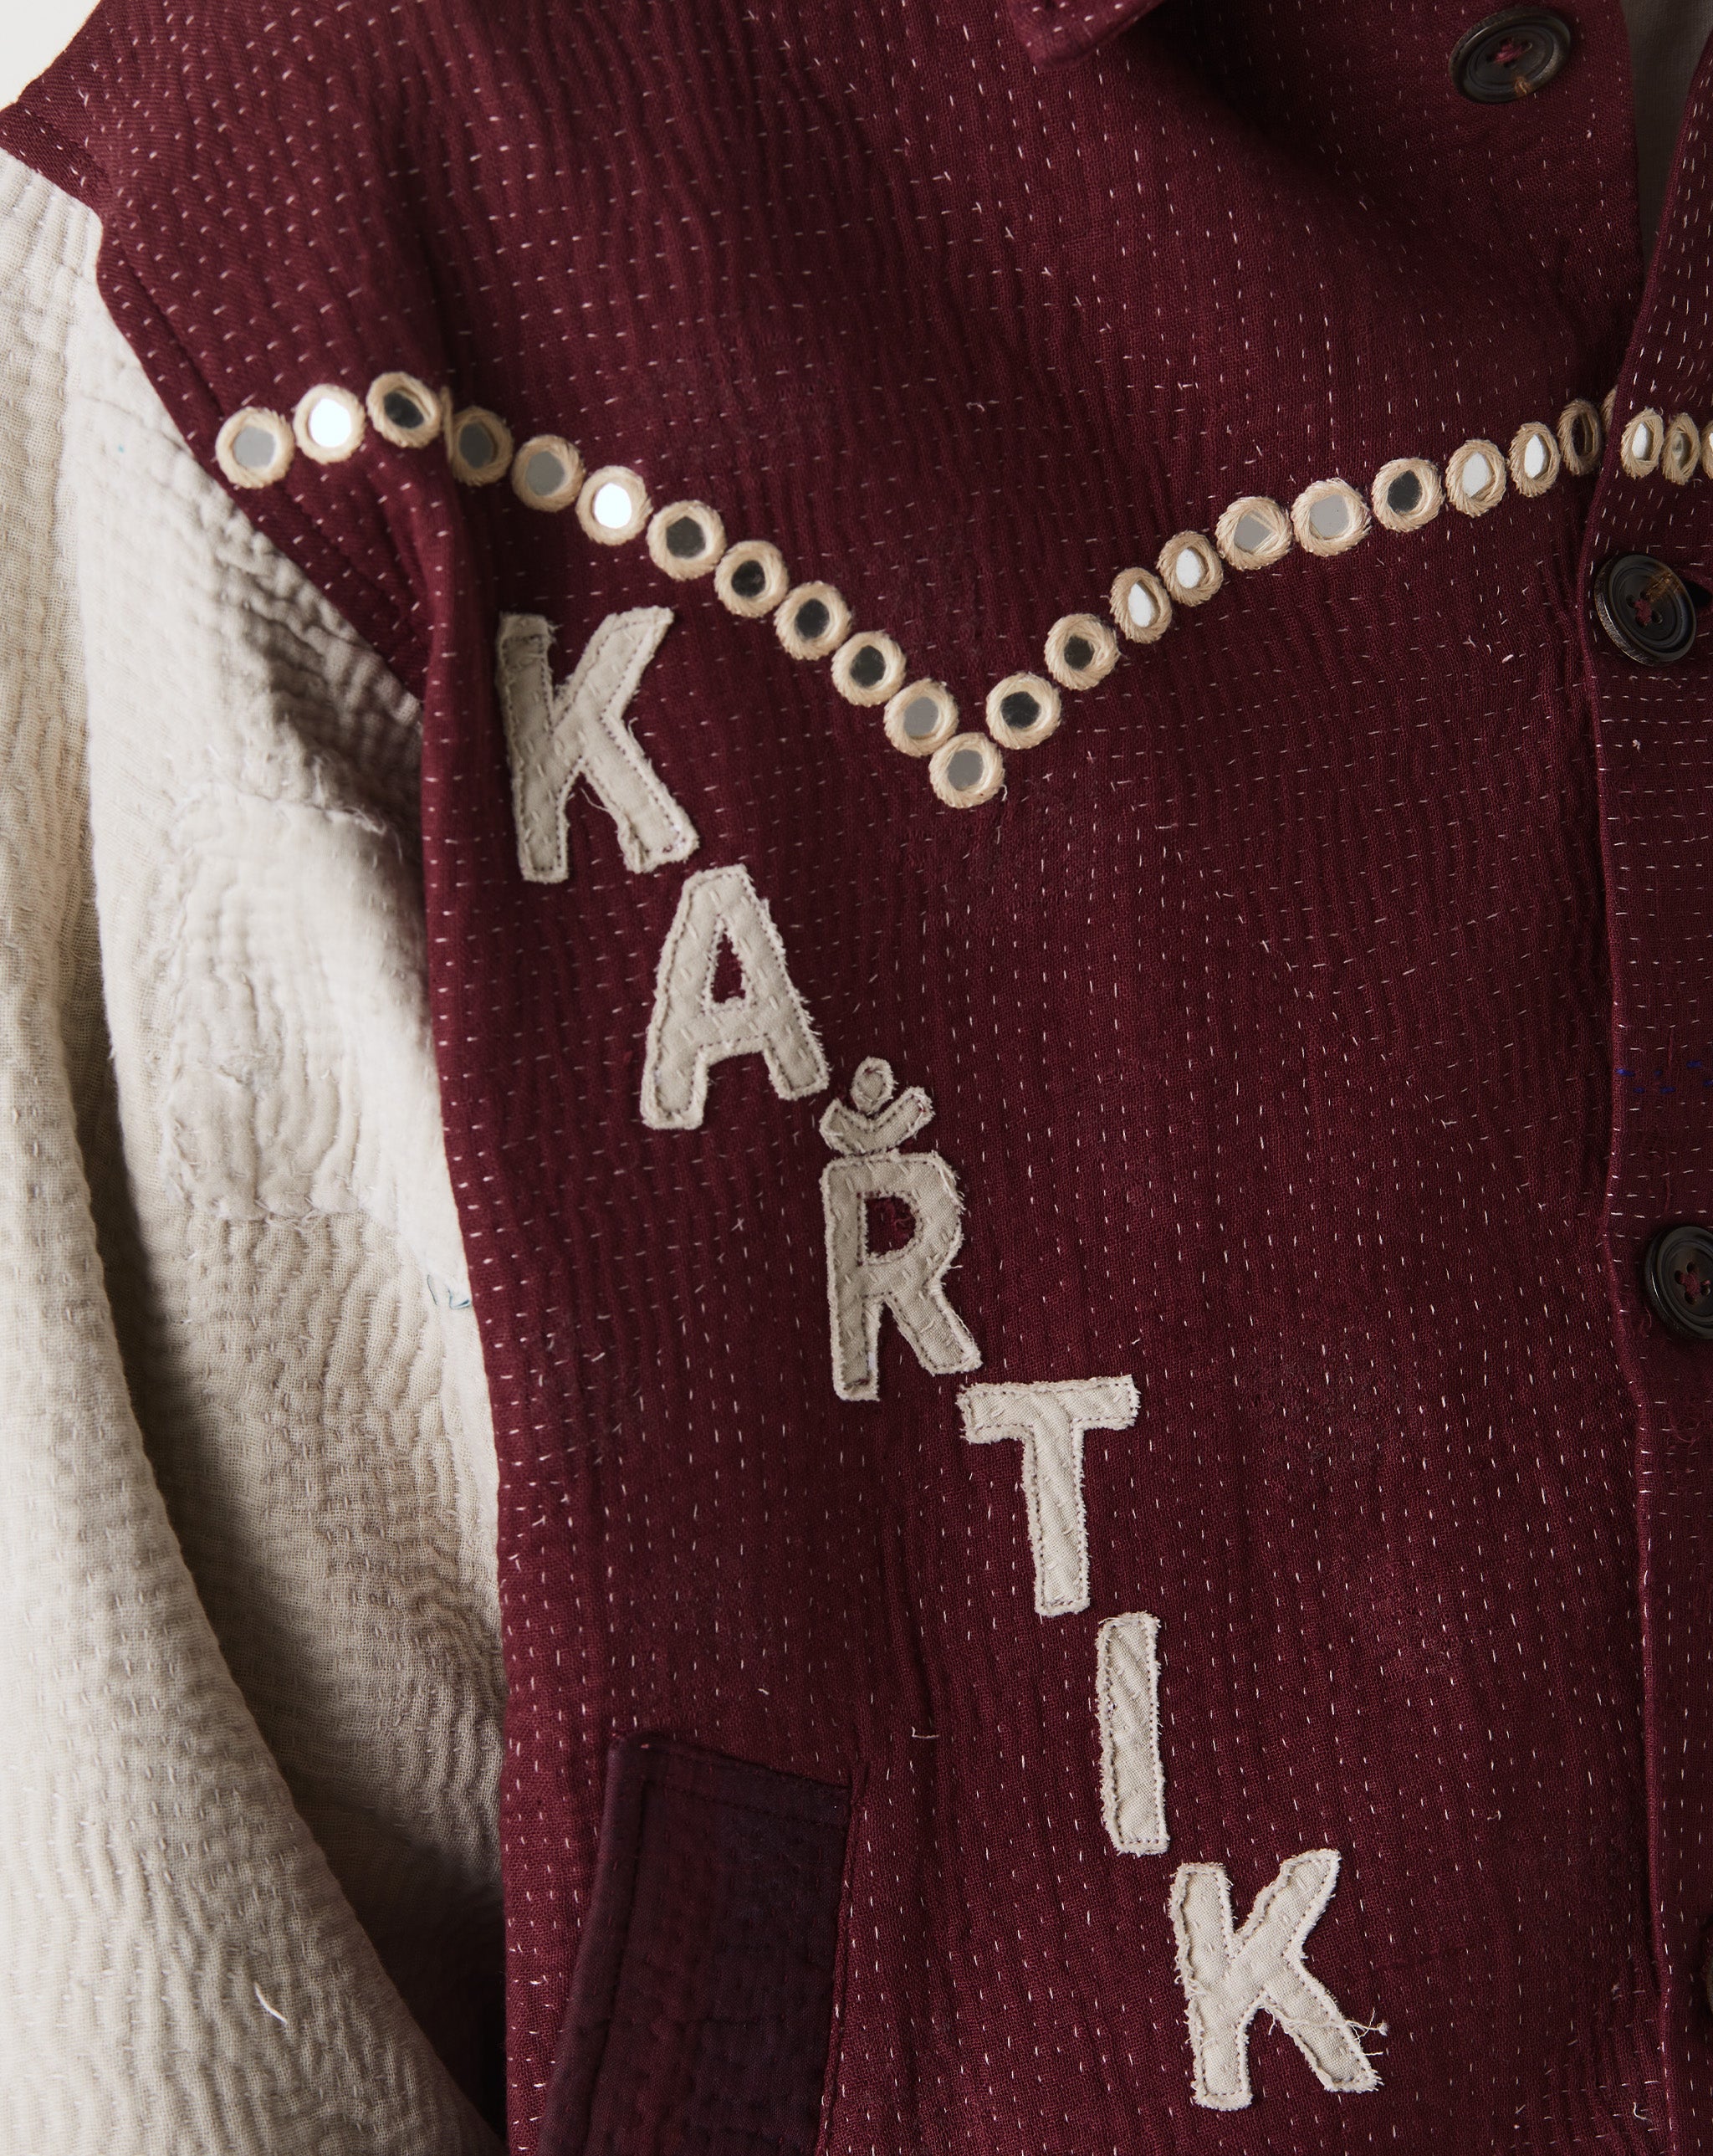 Kartik Research Varsity Jacket  - Cheap Urlfreeze Jordan outlet